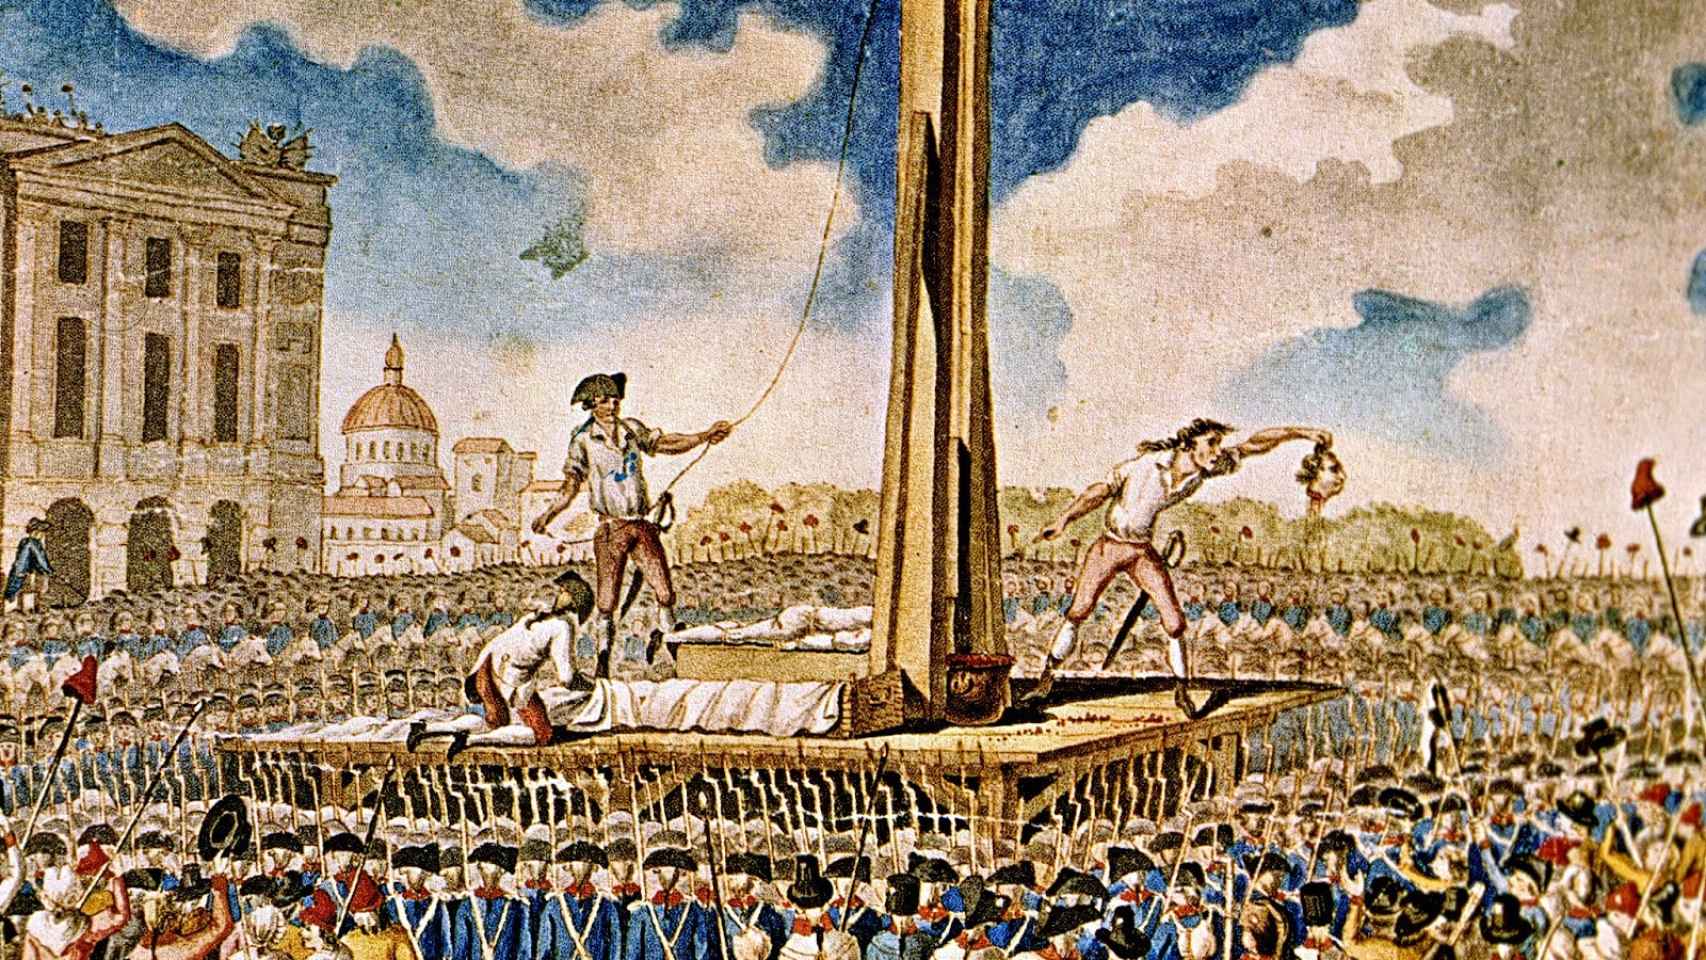 Grabado sobre las ejecuciones a guillotina durante la Revolución Francesa.